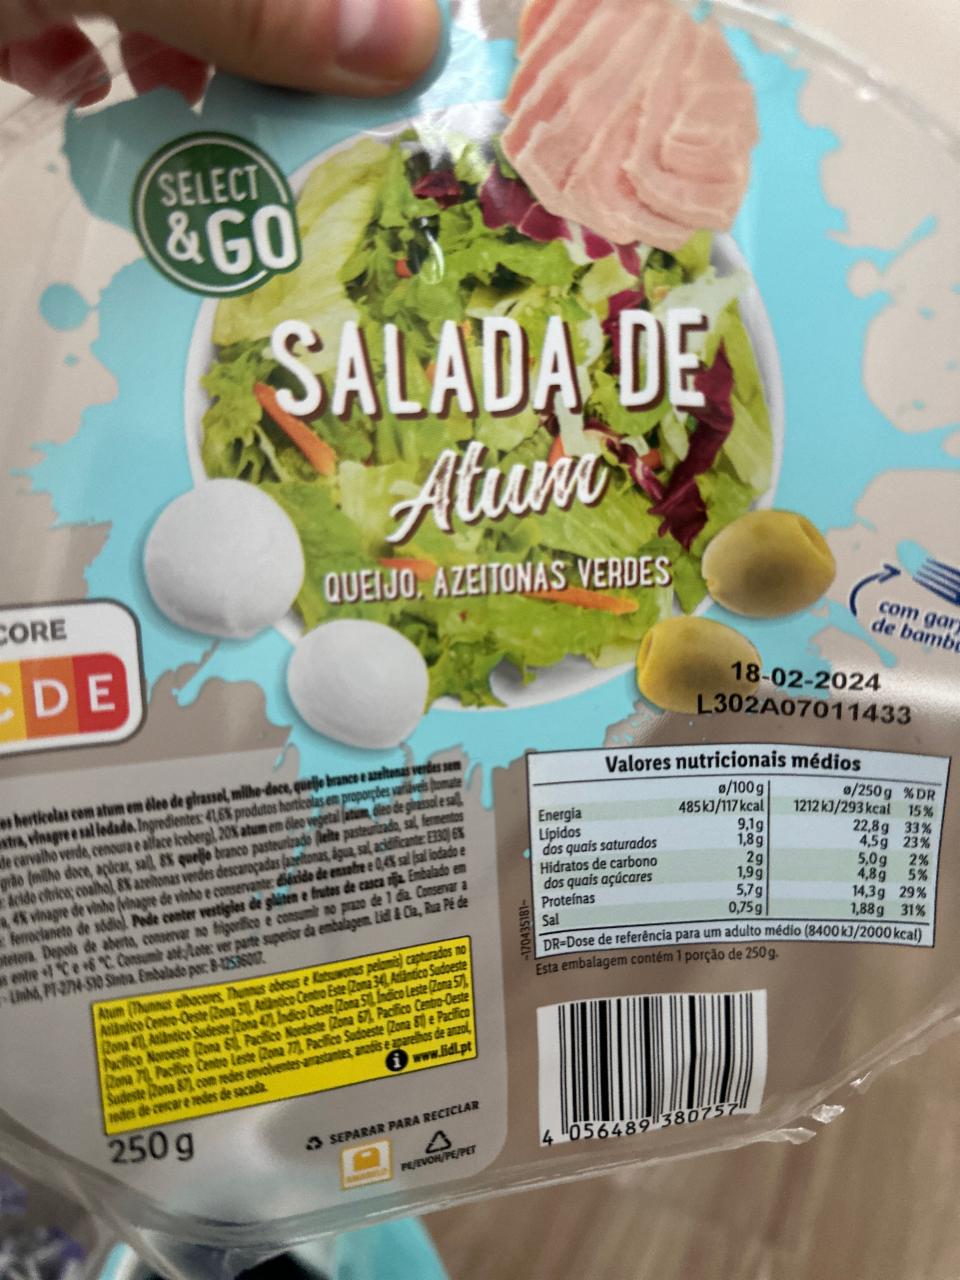 Фото - Salade de atum Select&Go